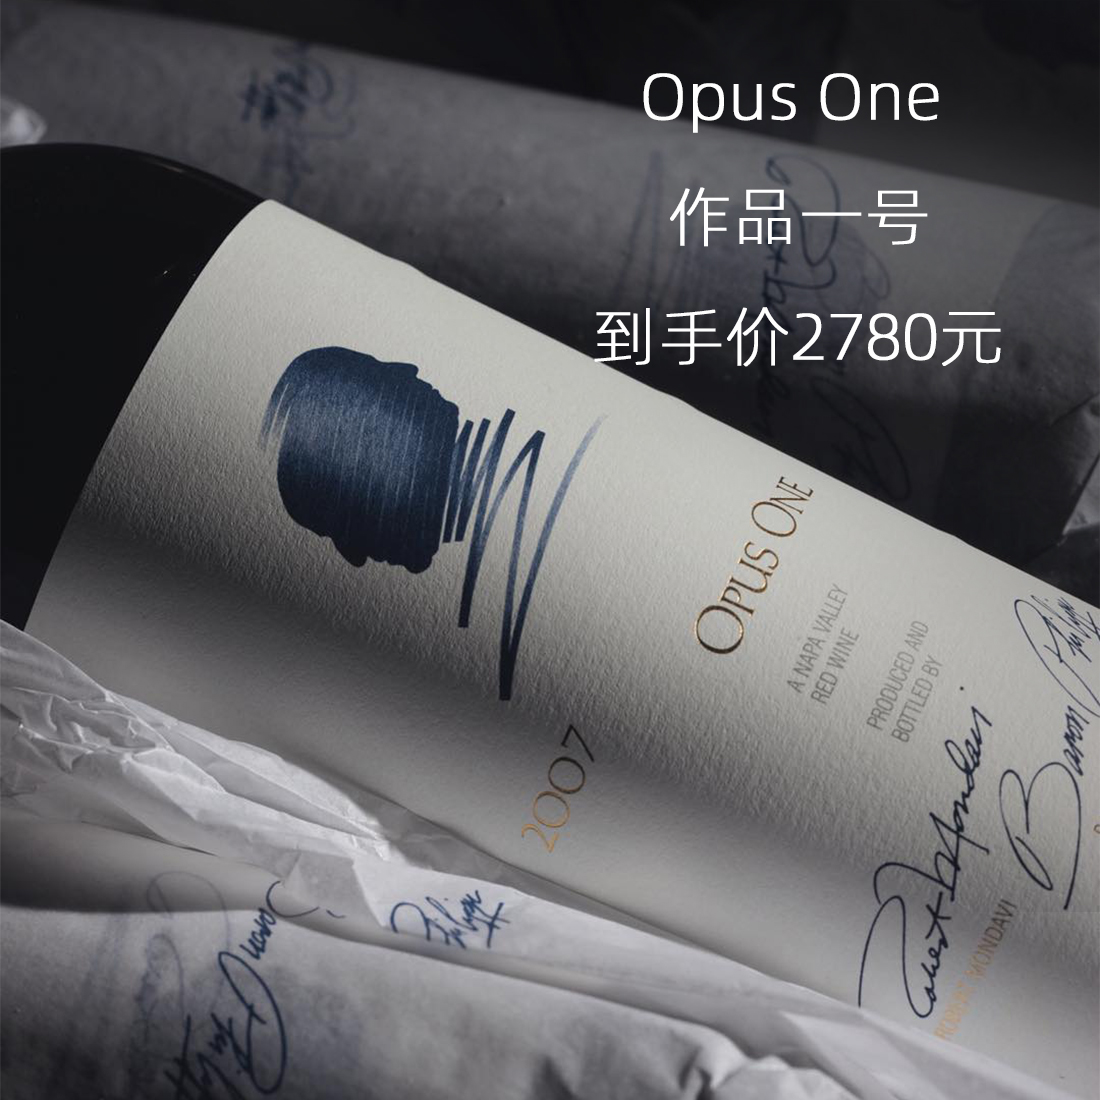 进口行货 作品一号 Opus One 美国纳帕谷红酒 干红葡萄酒 遇冰酒